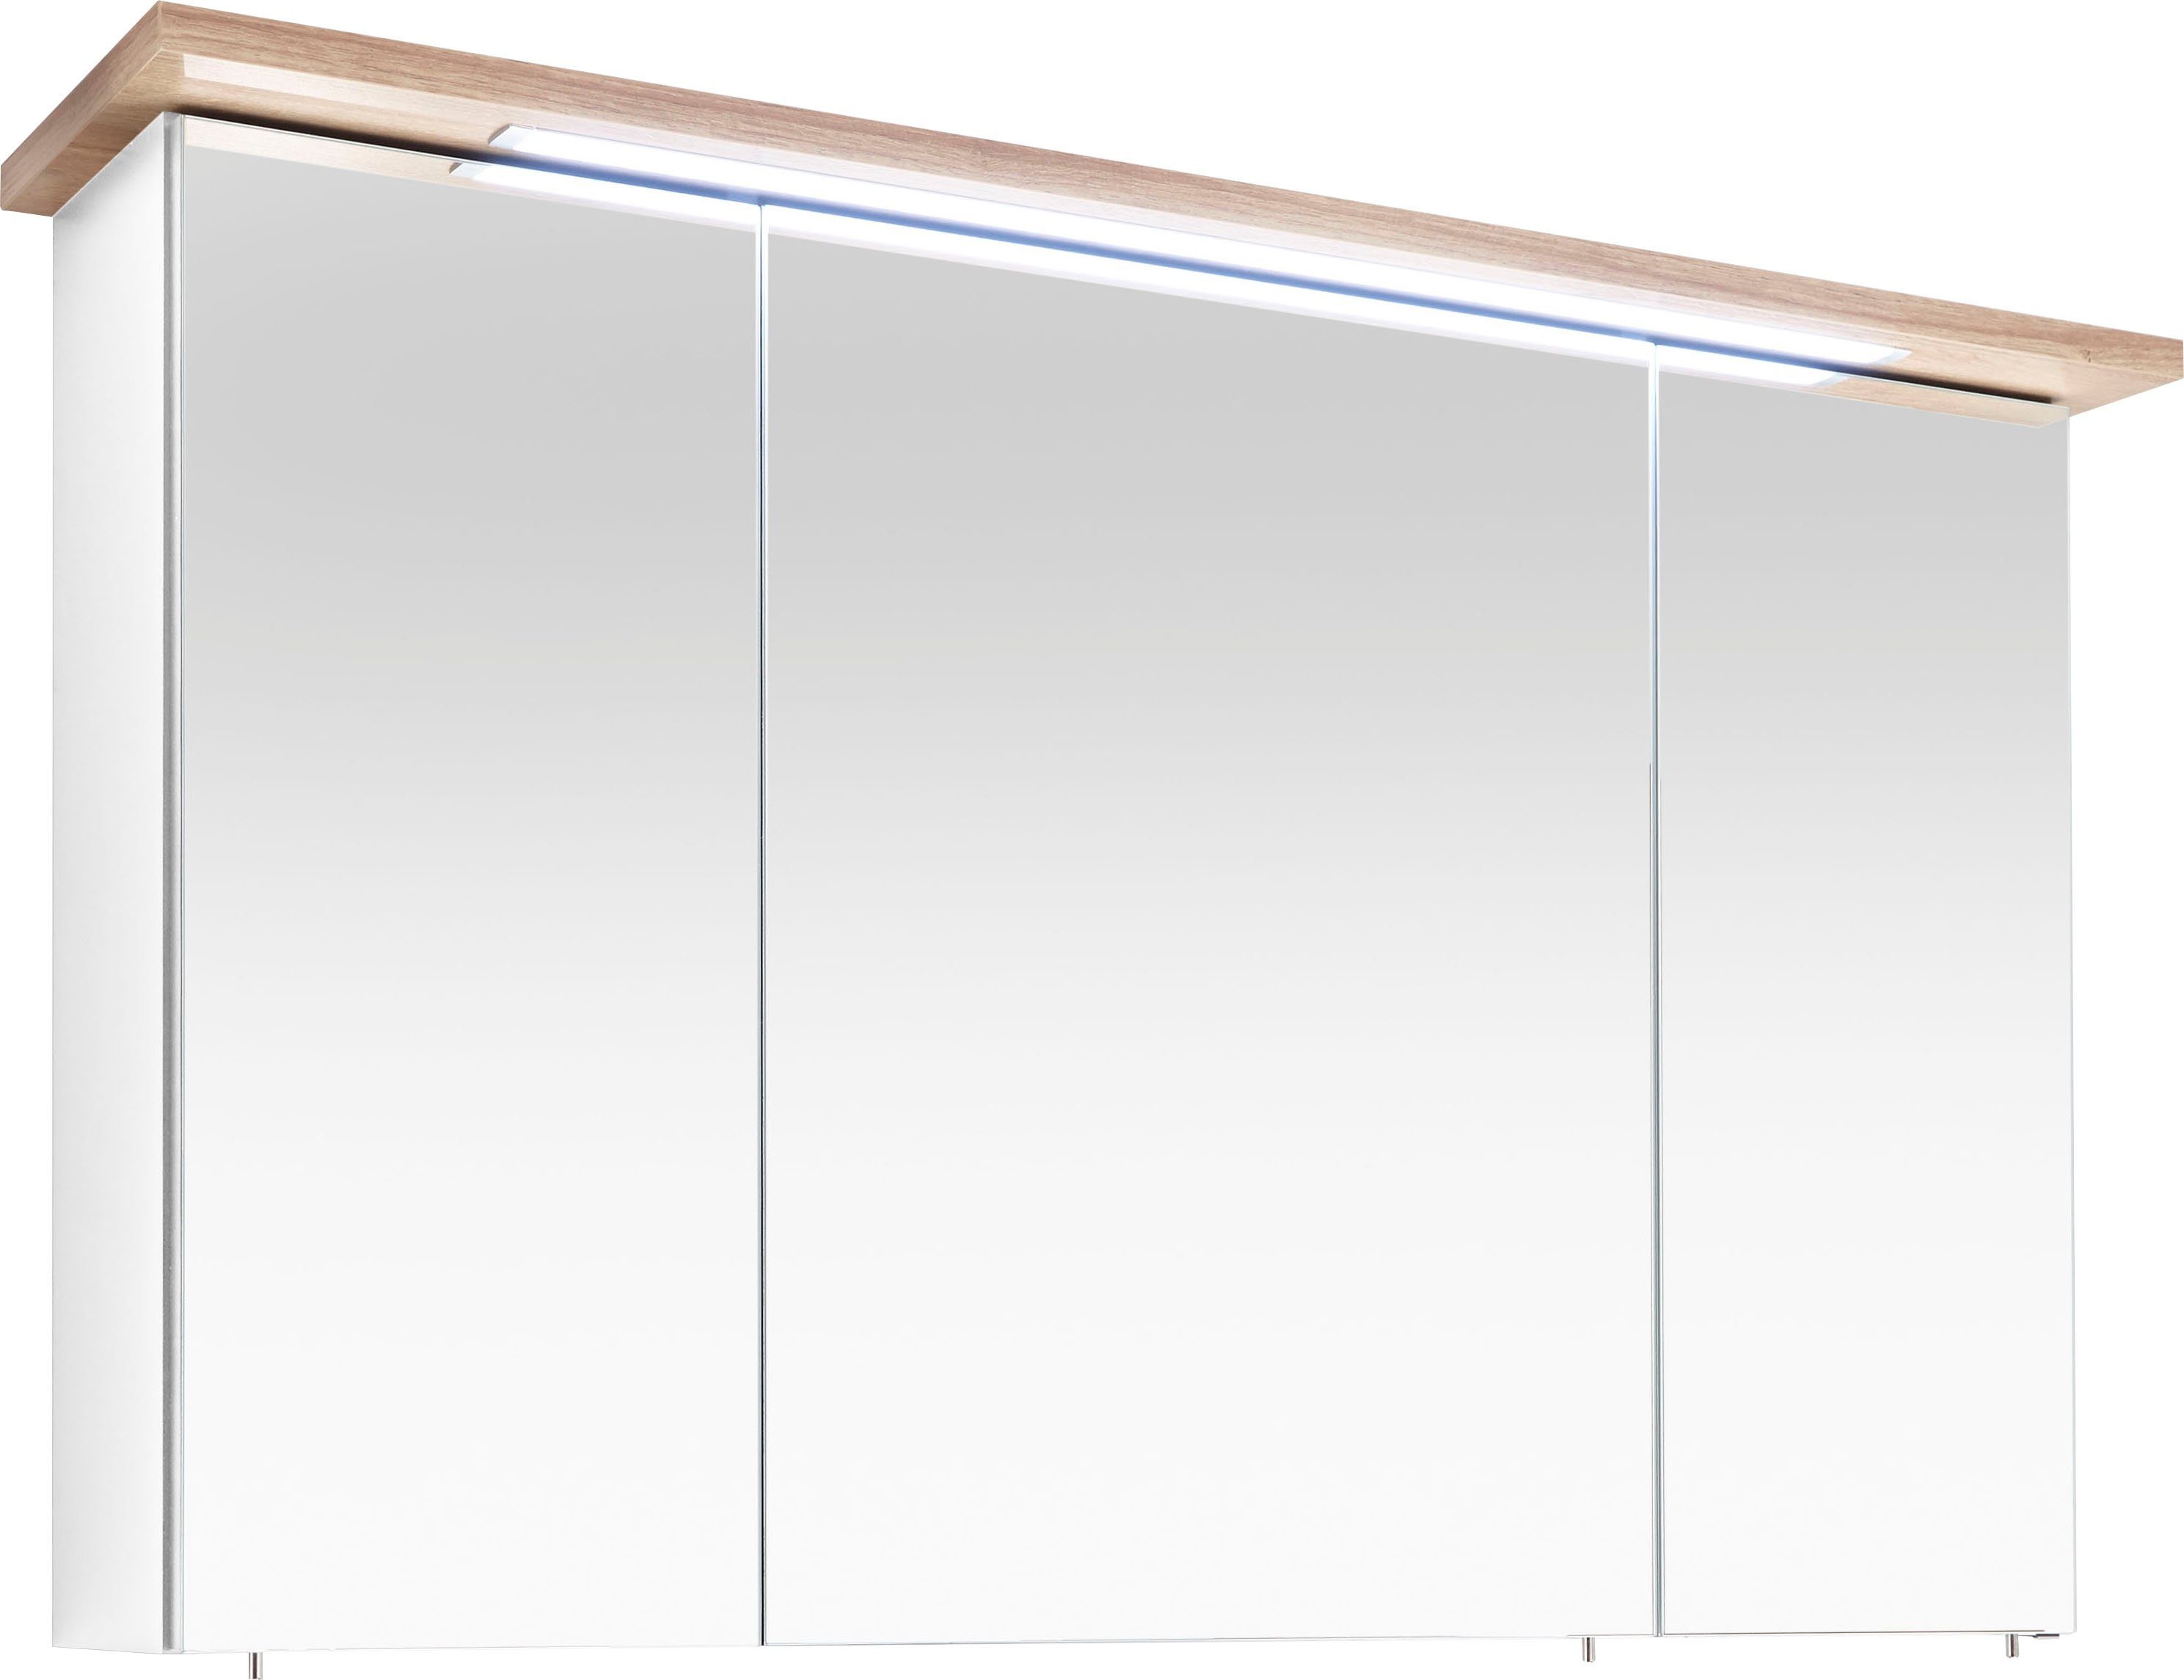 PELIPAL Spiegelkast Quickset 923 Breedte 115 cm, 3-deurs, verzonken ledverlichting, schakelaar/contactdoos, deurdemper